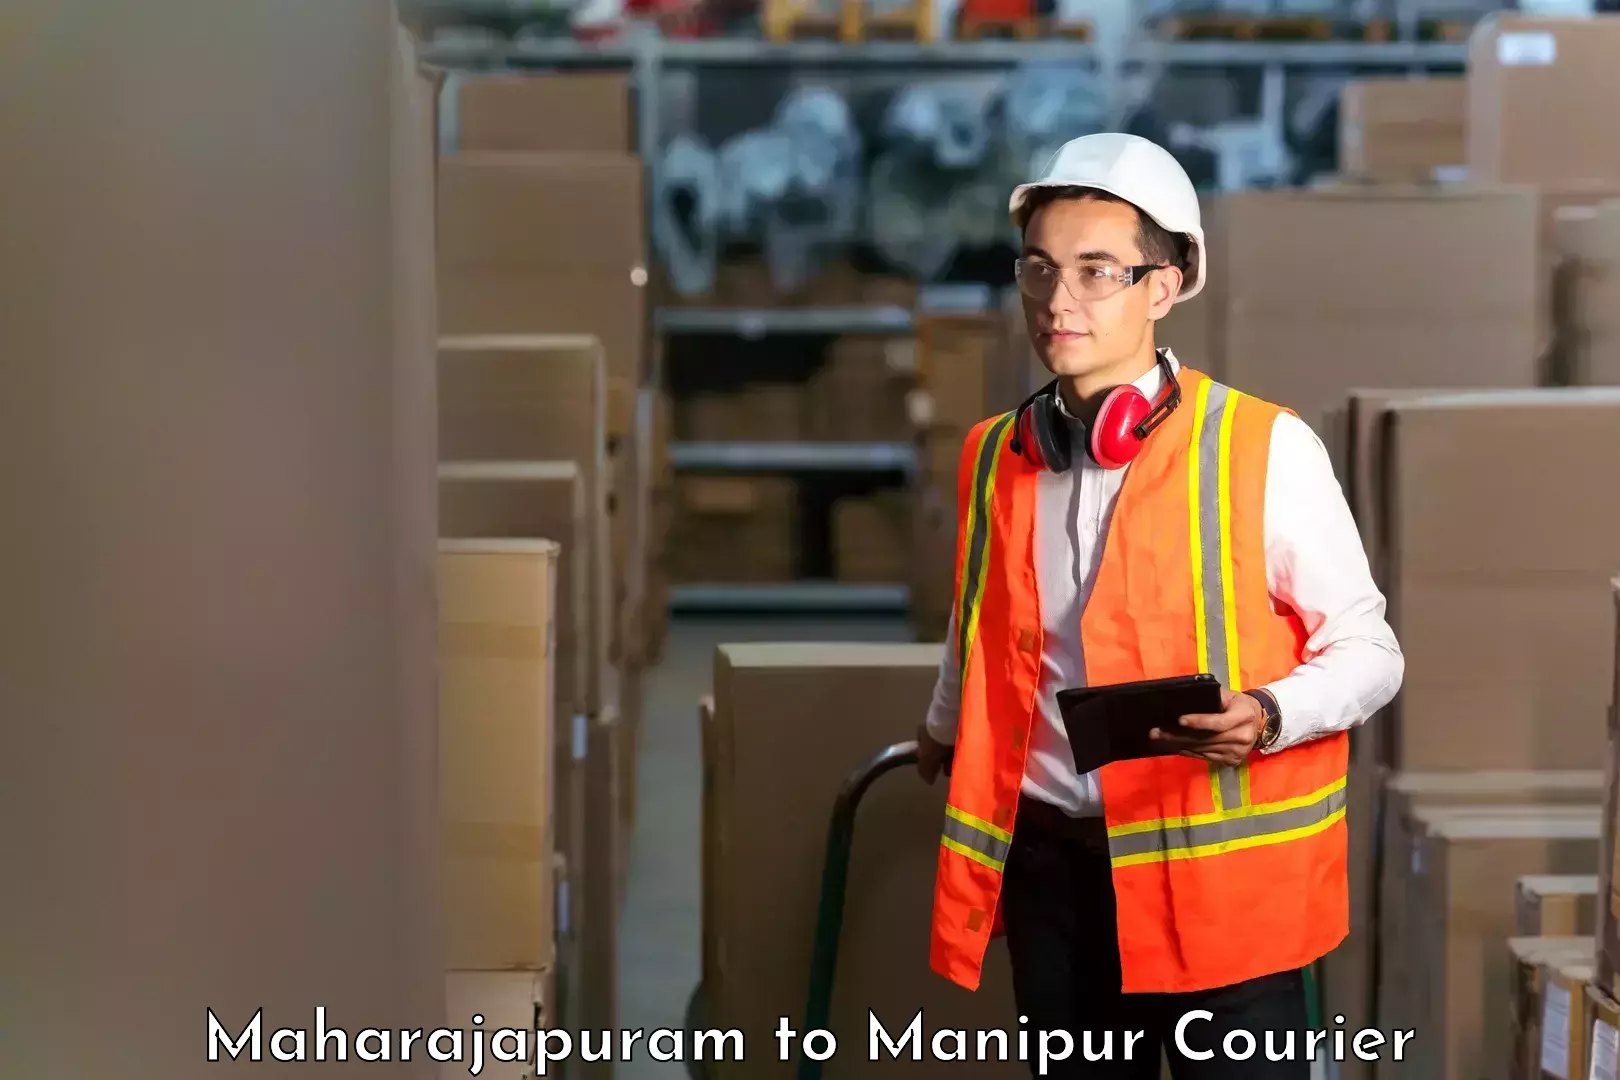 Courier service comparison Maharajapuram to Tamenglong